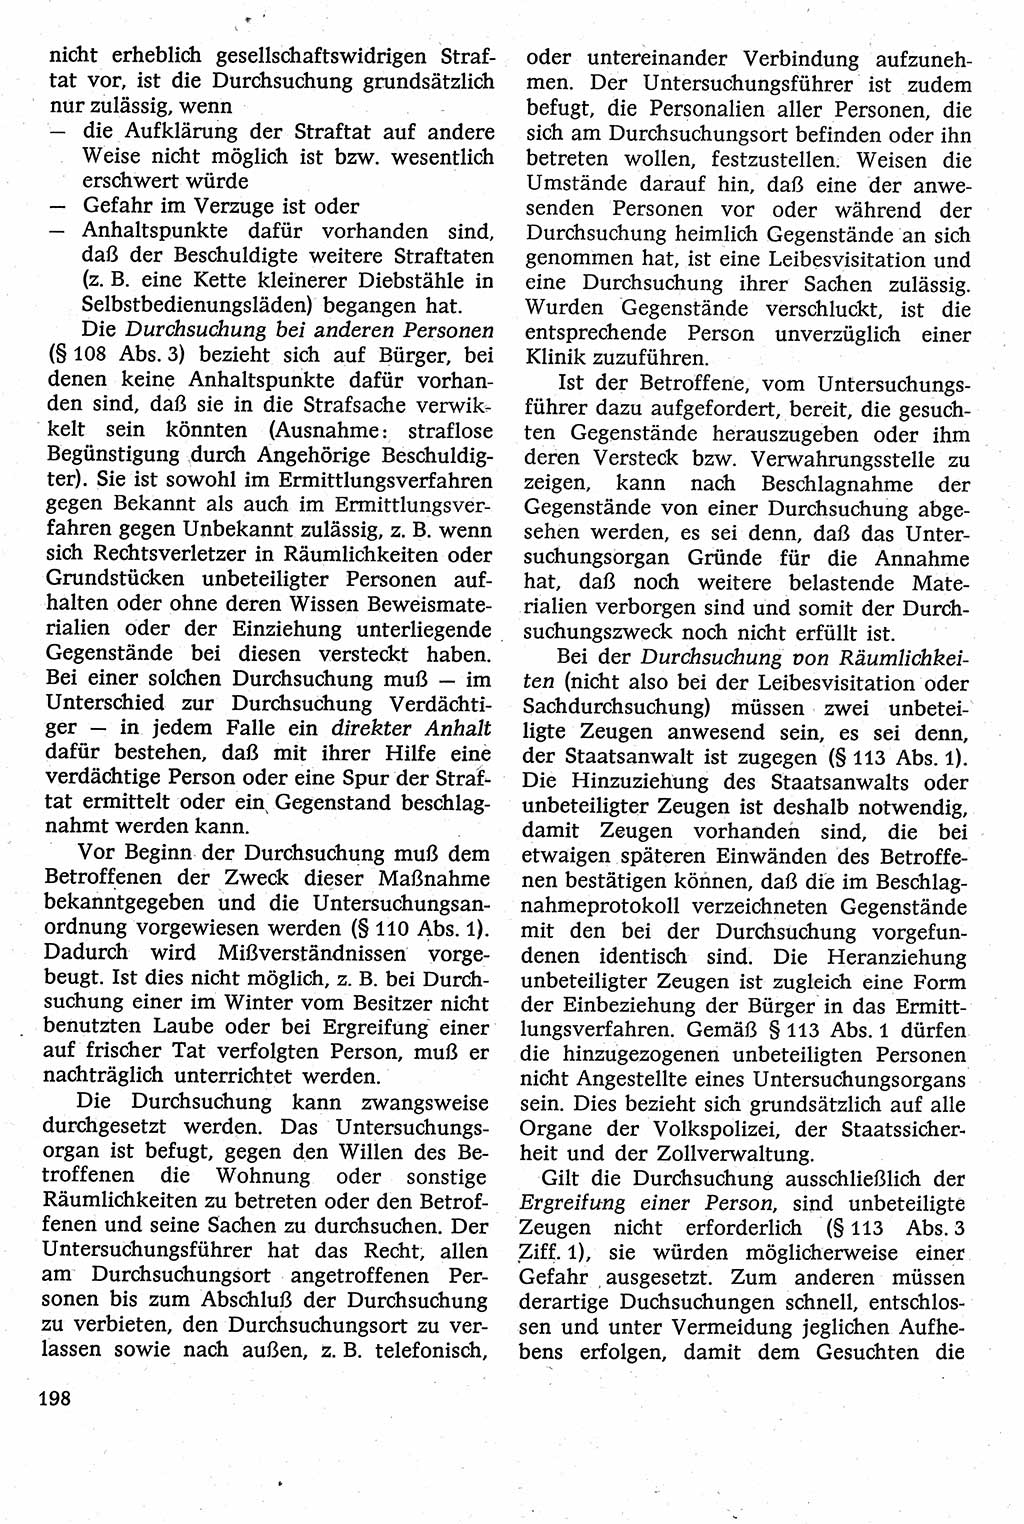 Strafverfahrensrecht [Deutsche Demokratische Republik (DDR)], Lehrbuch 1982, Seite 198 (Strafverf.-R. DDR Lb. 1982, S. 198)